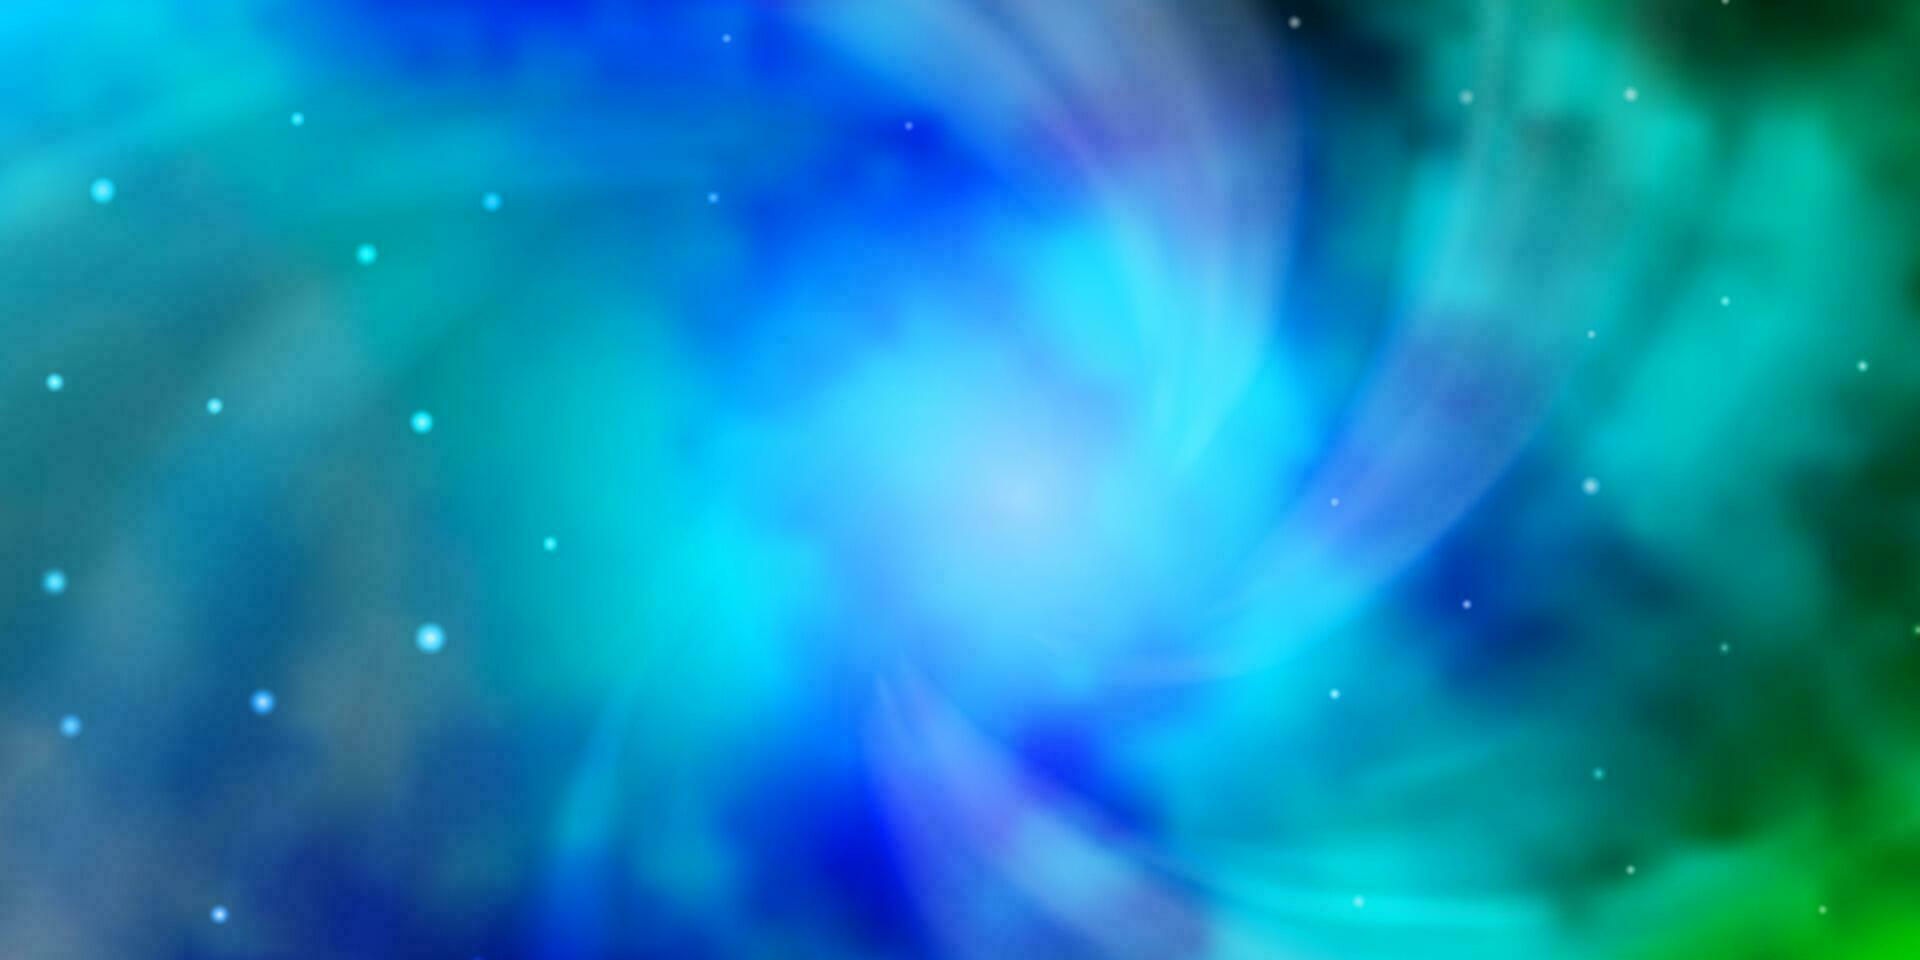 ljusblå, grön vektorstruktur med vackra stjärnor. vektor